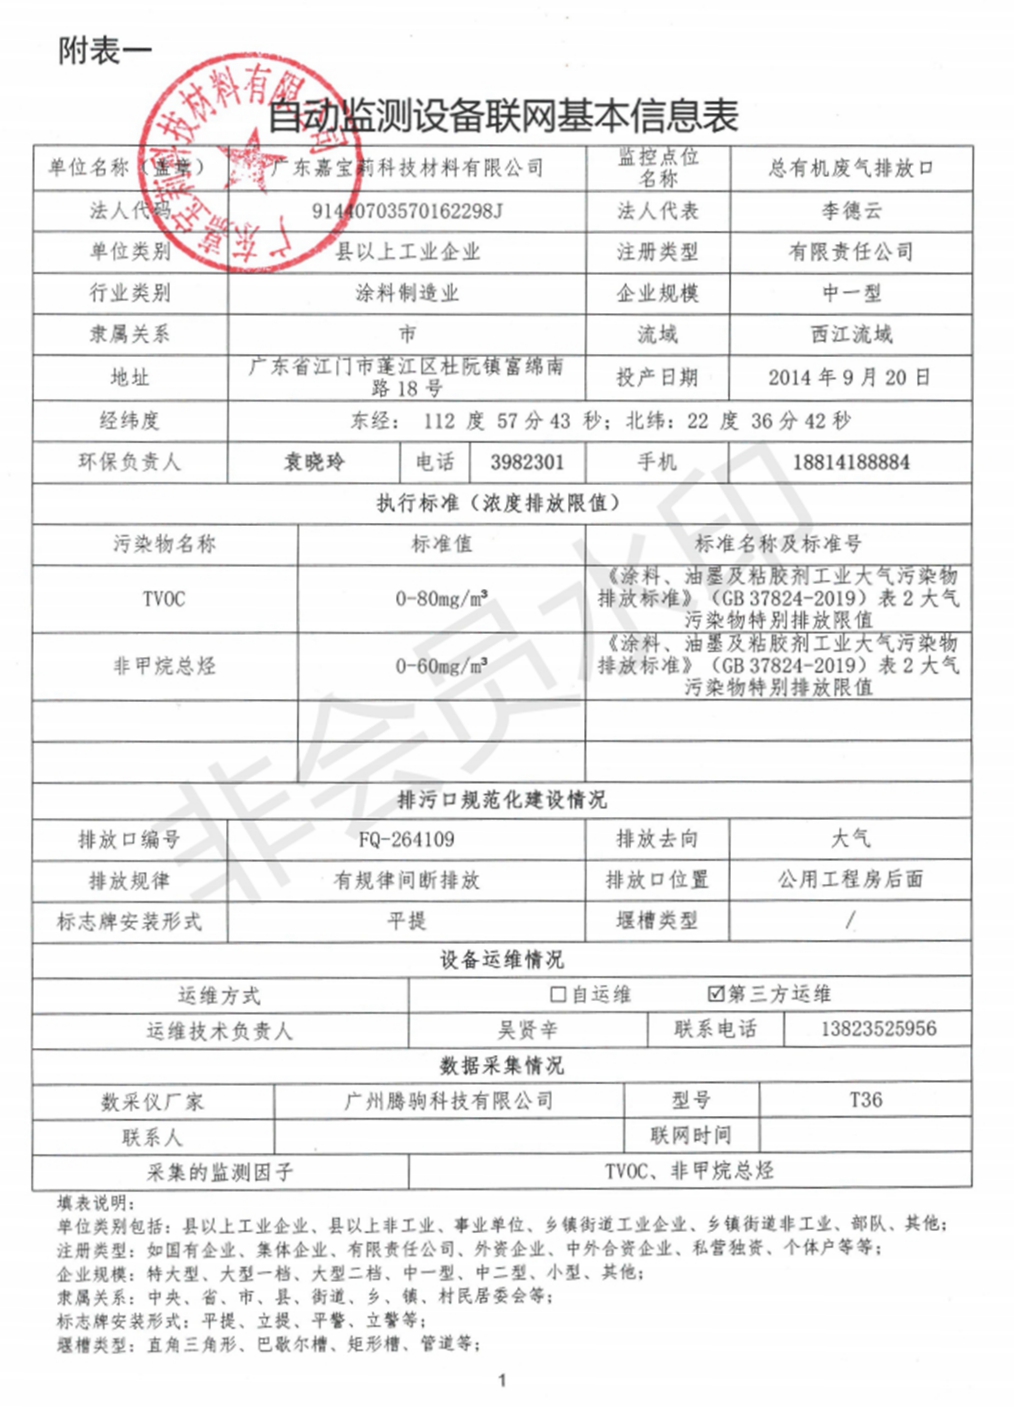 广东嘉宝莉科技材料有限公司大气在线监控信息表_00.jpg